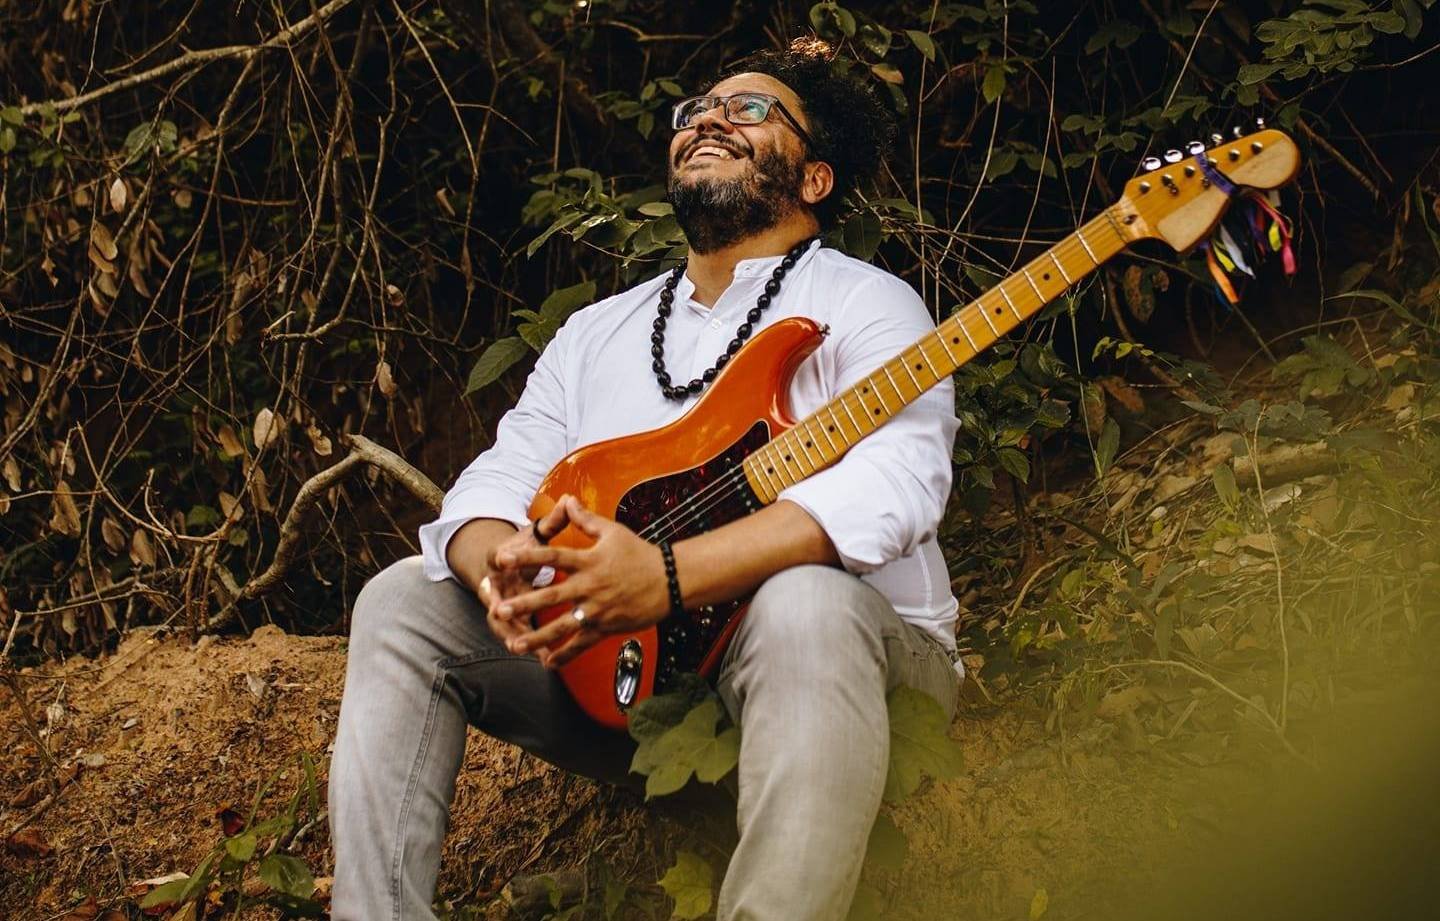 Iury Matias quer lavar o mundo com sons em novo EP